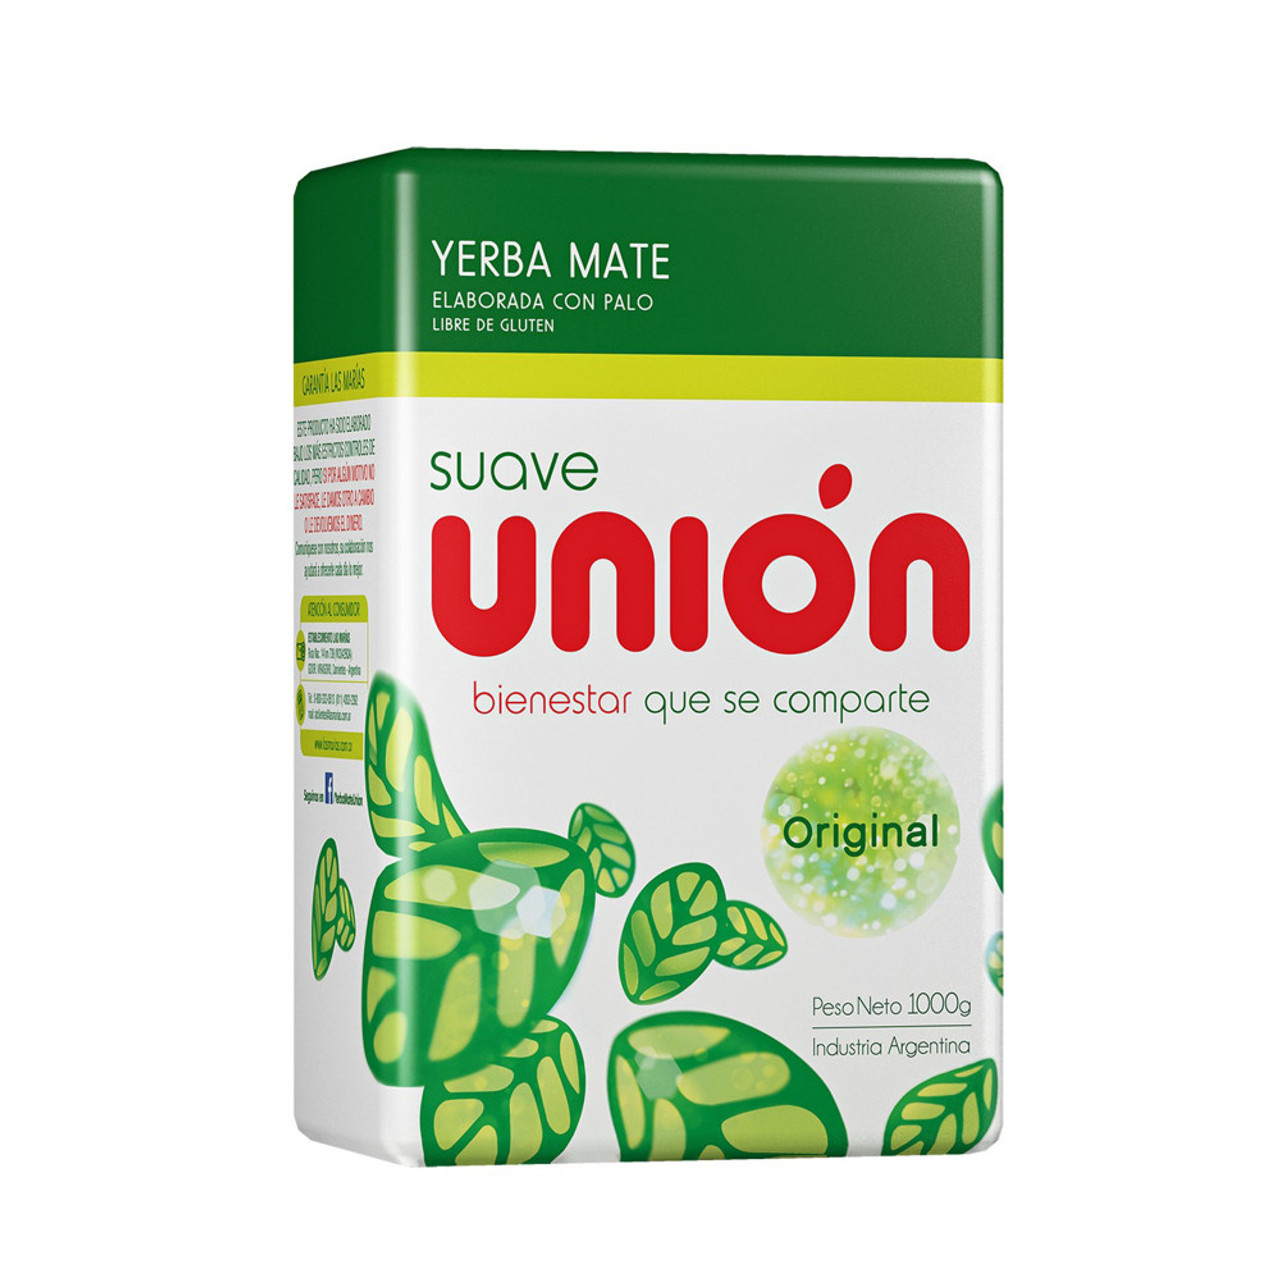 Unión Yerba Mate Suave Original, 1 kg / 2.2 lb